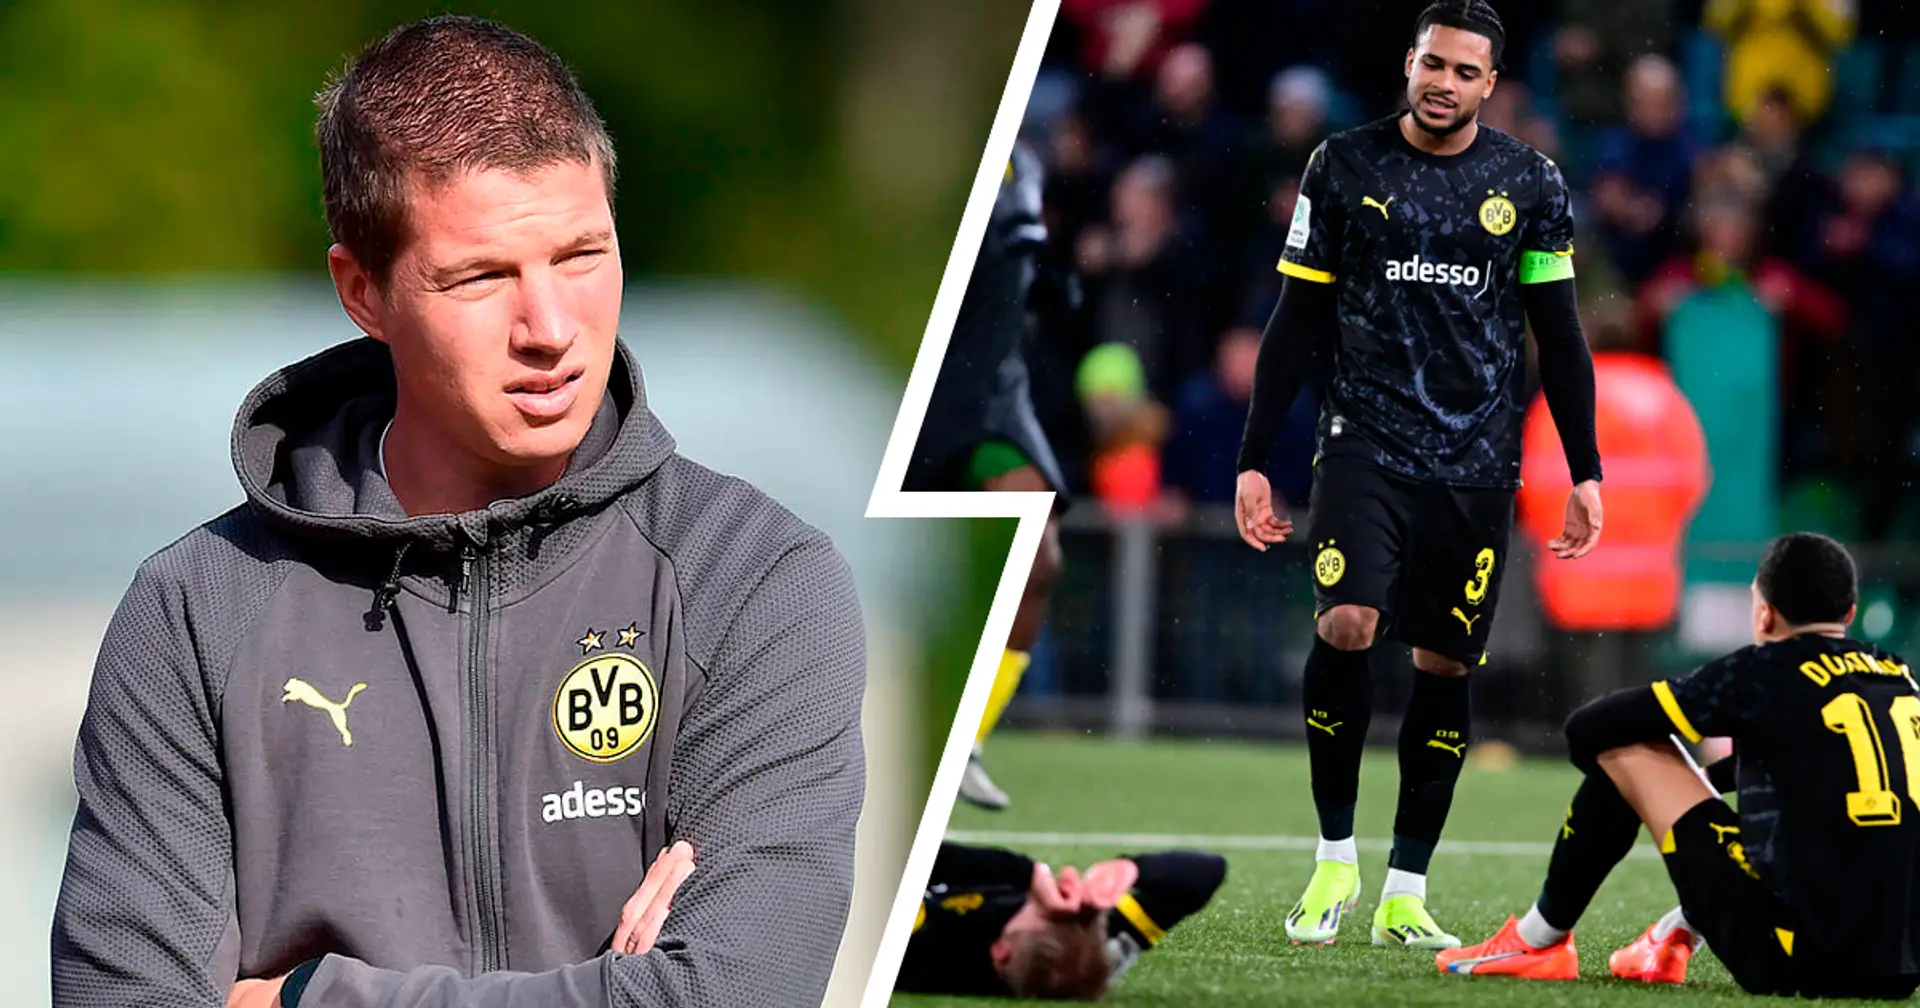 "Das tut weh, so muss es auch sein": BVB-U19-Coach Tullberg reagiert auf den Schock-Aus aus der Youth League